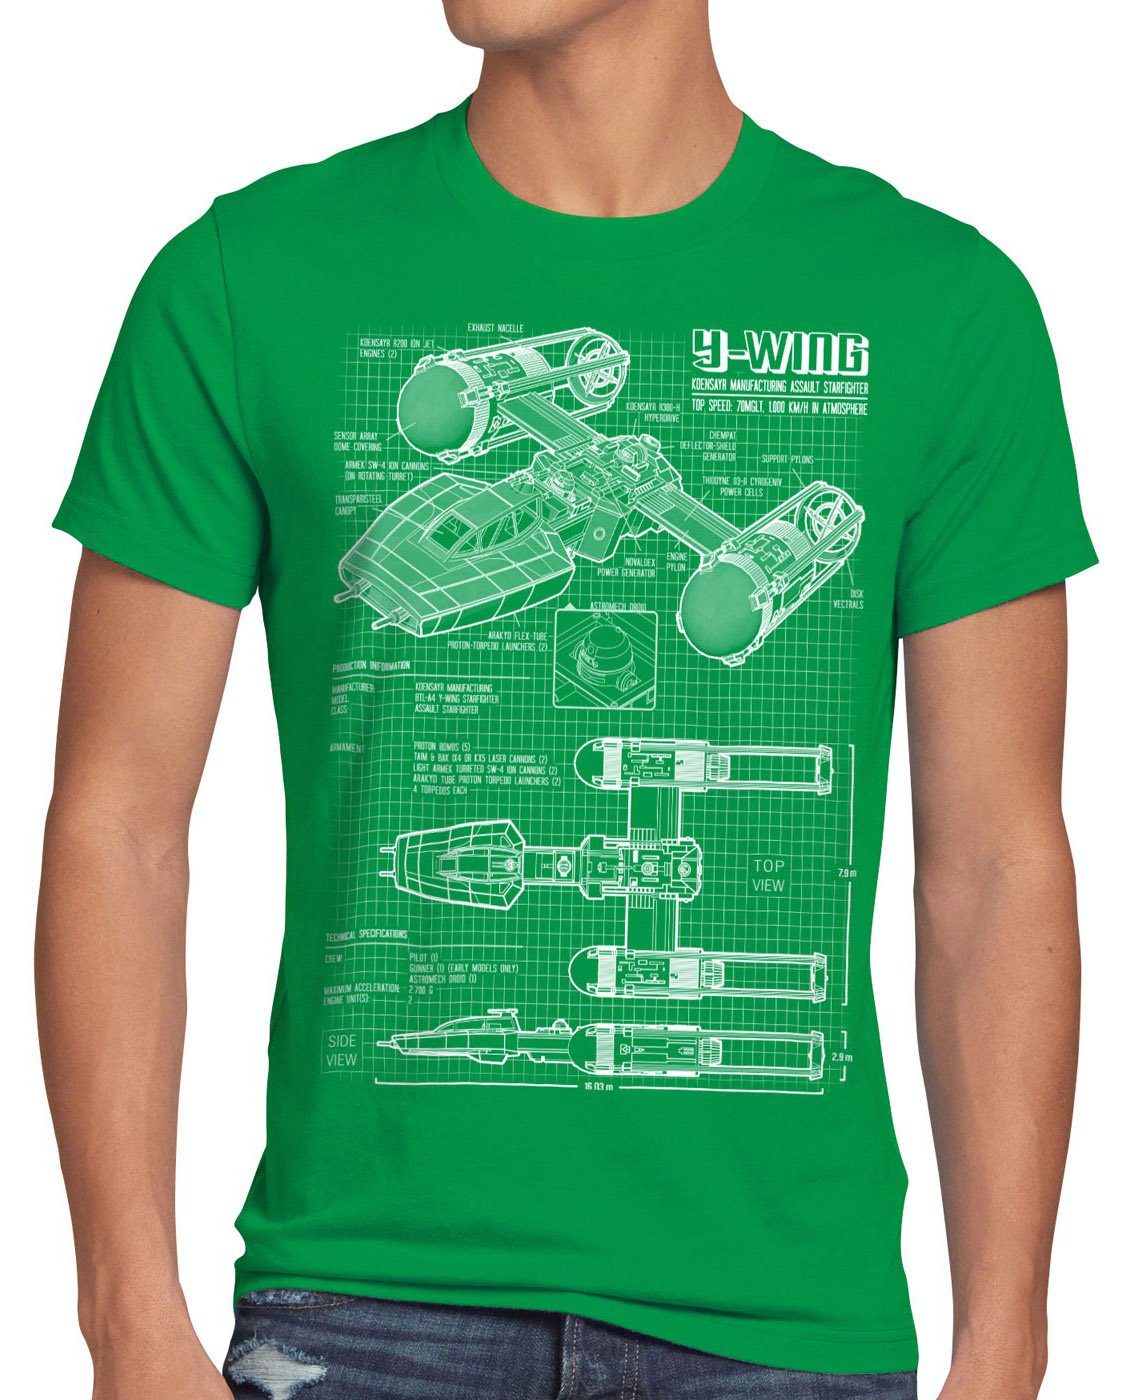 wars der Print-Shirt Herren style3 battlefront x-wing grün rebellion T-Shirt star Y-Wing krieg sterne